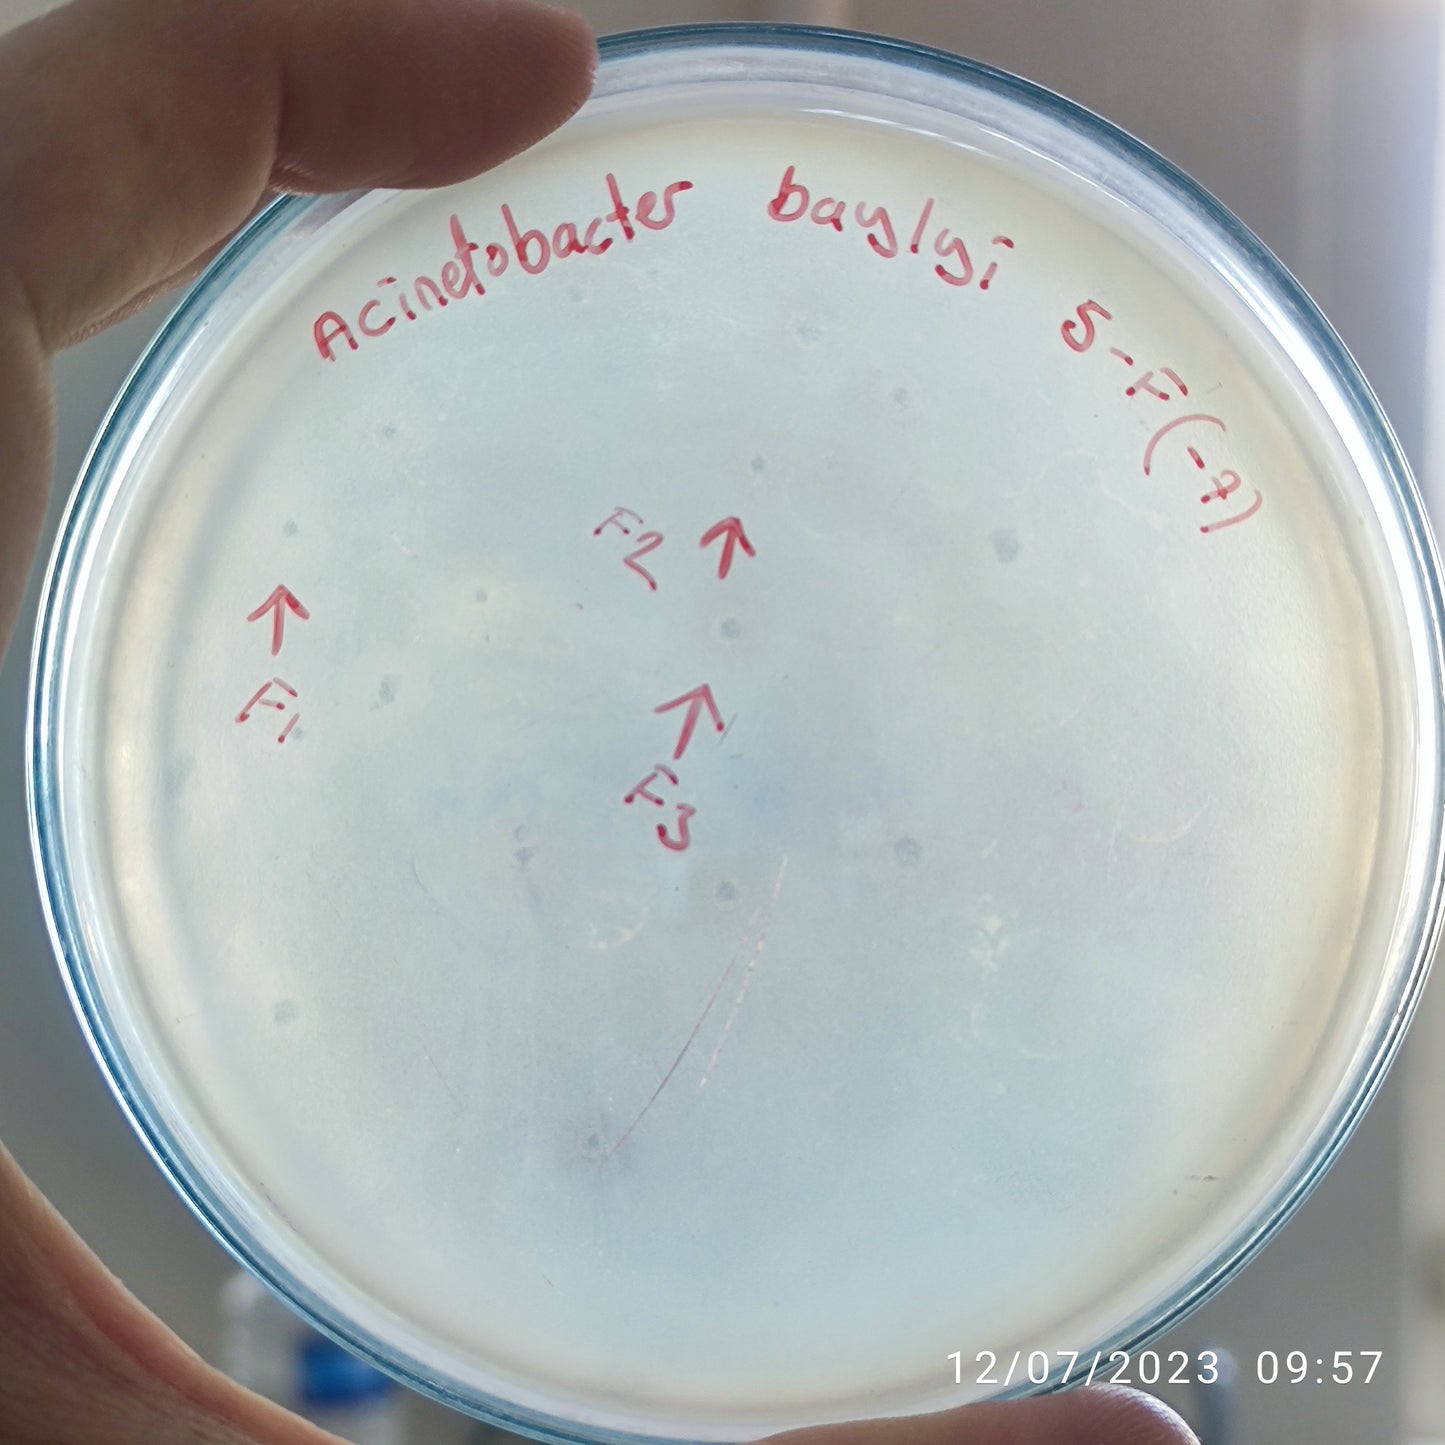 Acinetobacter baylyi bacteriophage 128005F